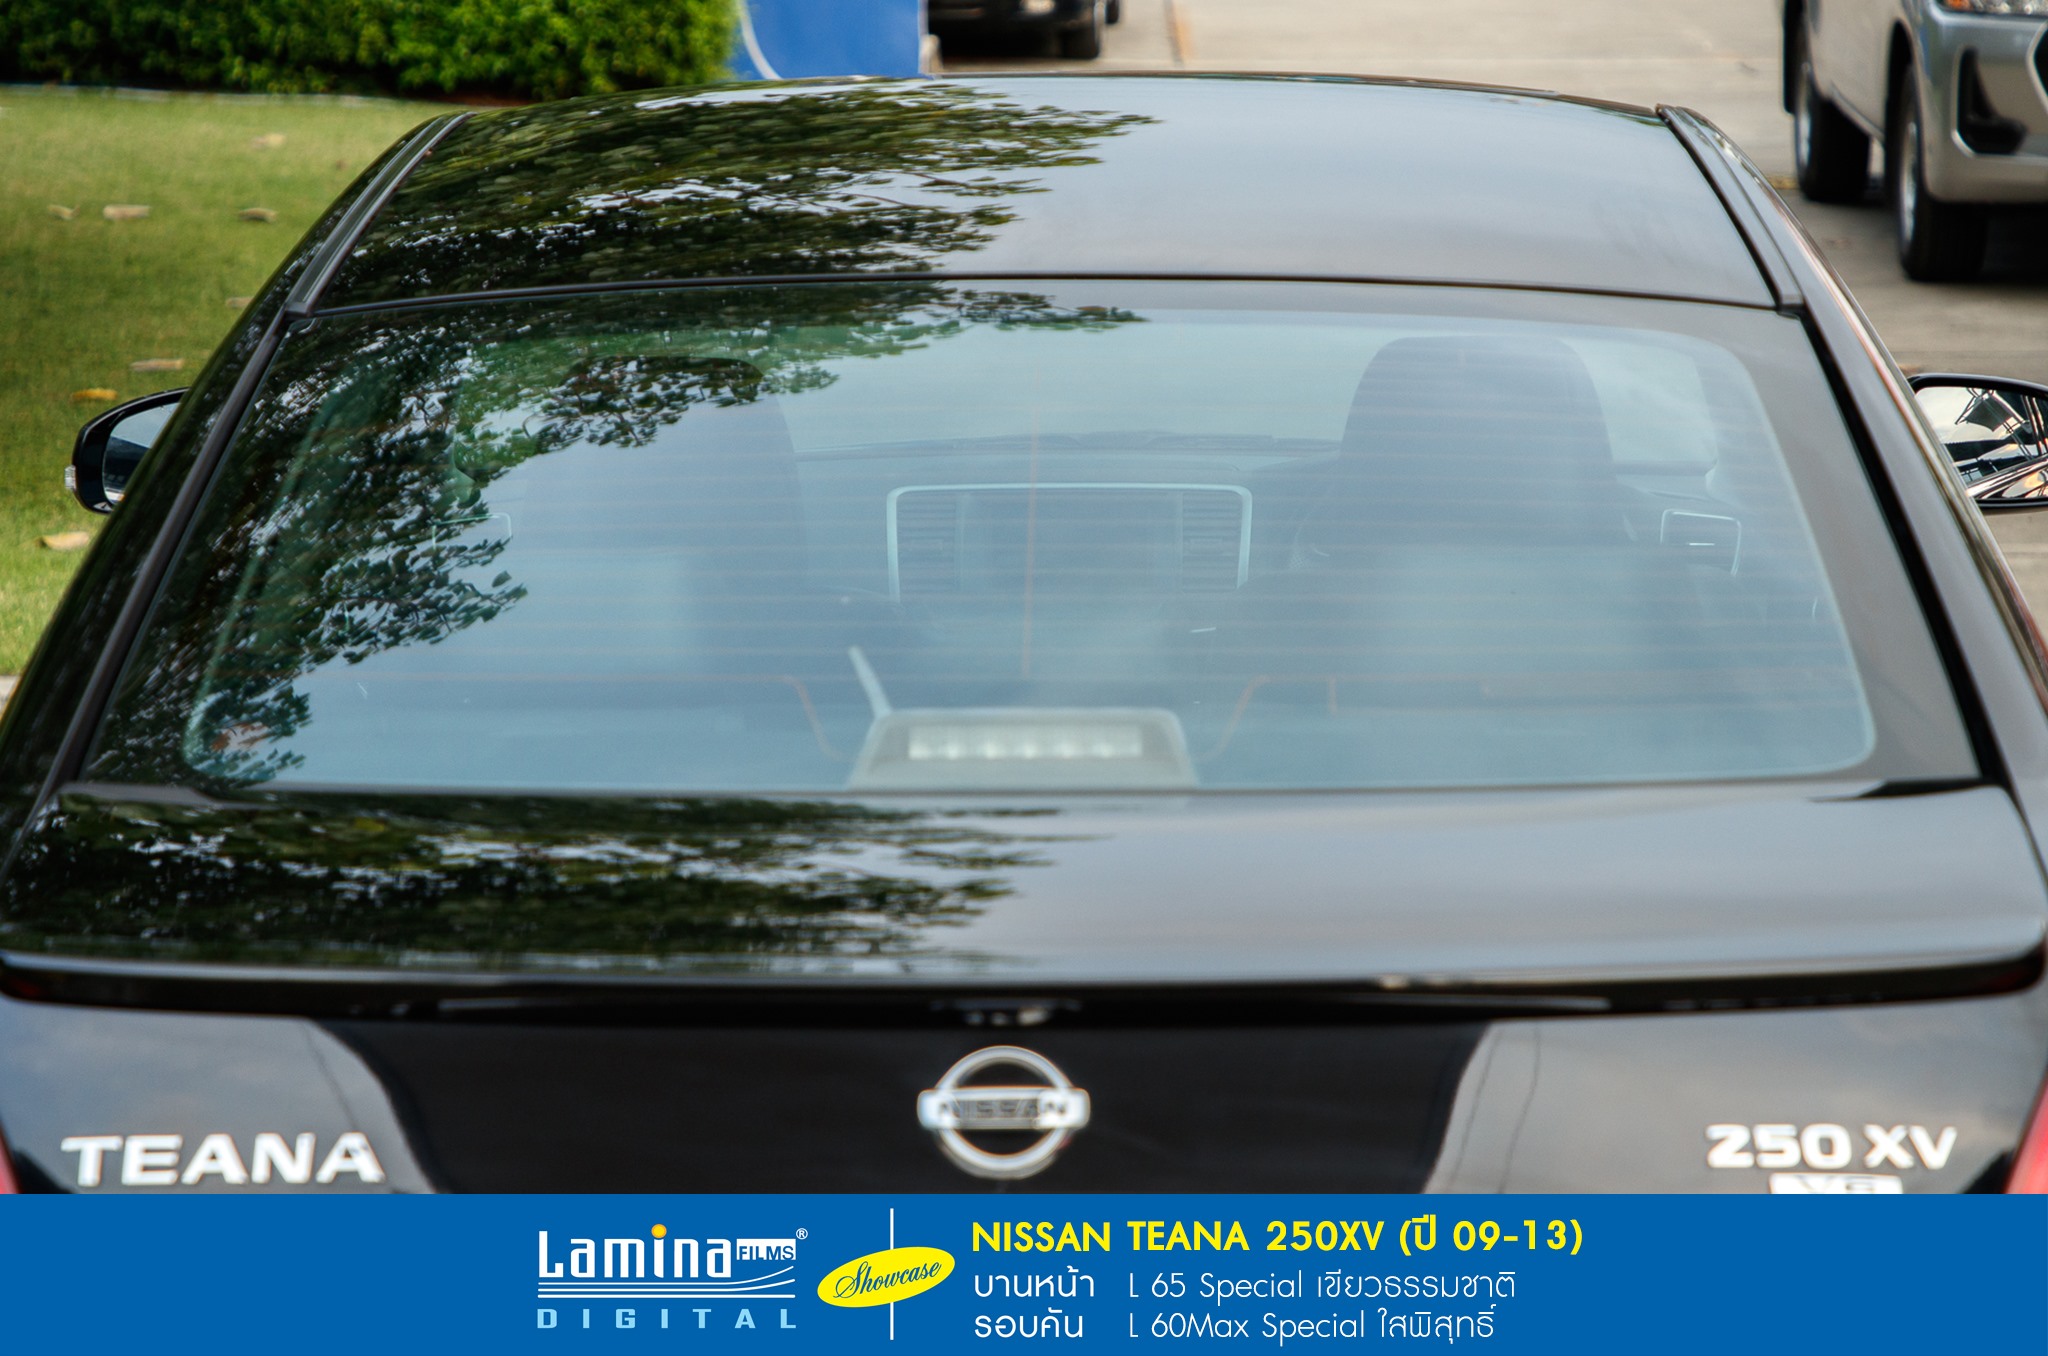 ฟิล์มใสกันร้อน lamina special series Nissan Teana 250xv 4